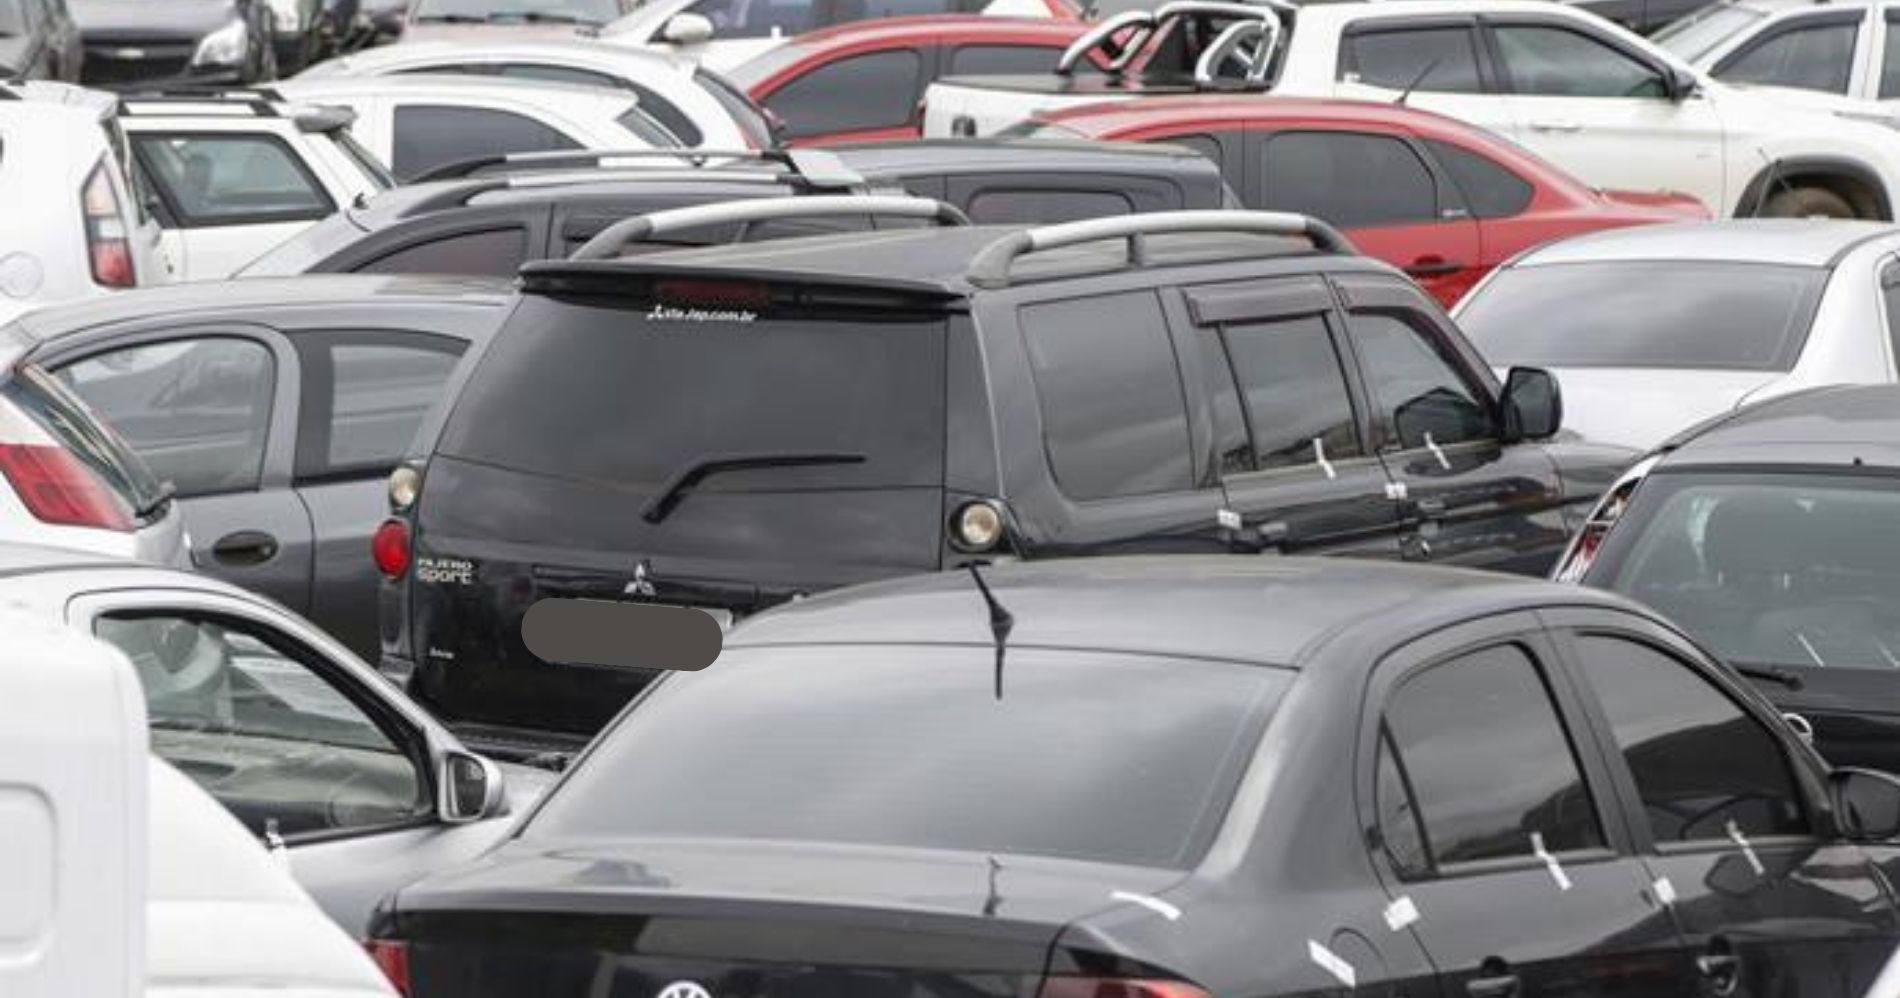 Setran realiza leilão on-line com 71 veículos em condições de circulação em Curitiba